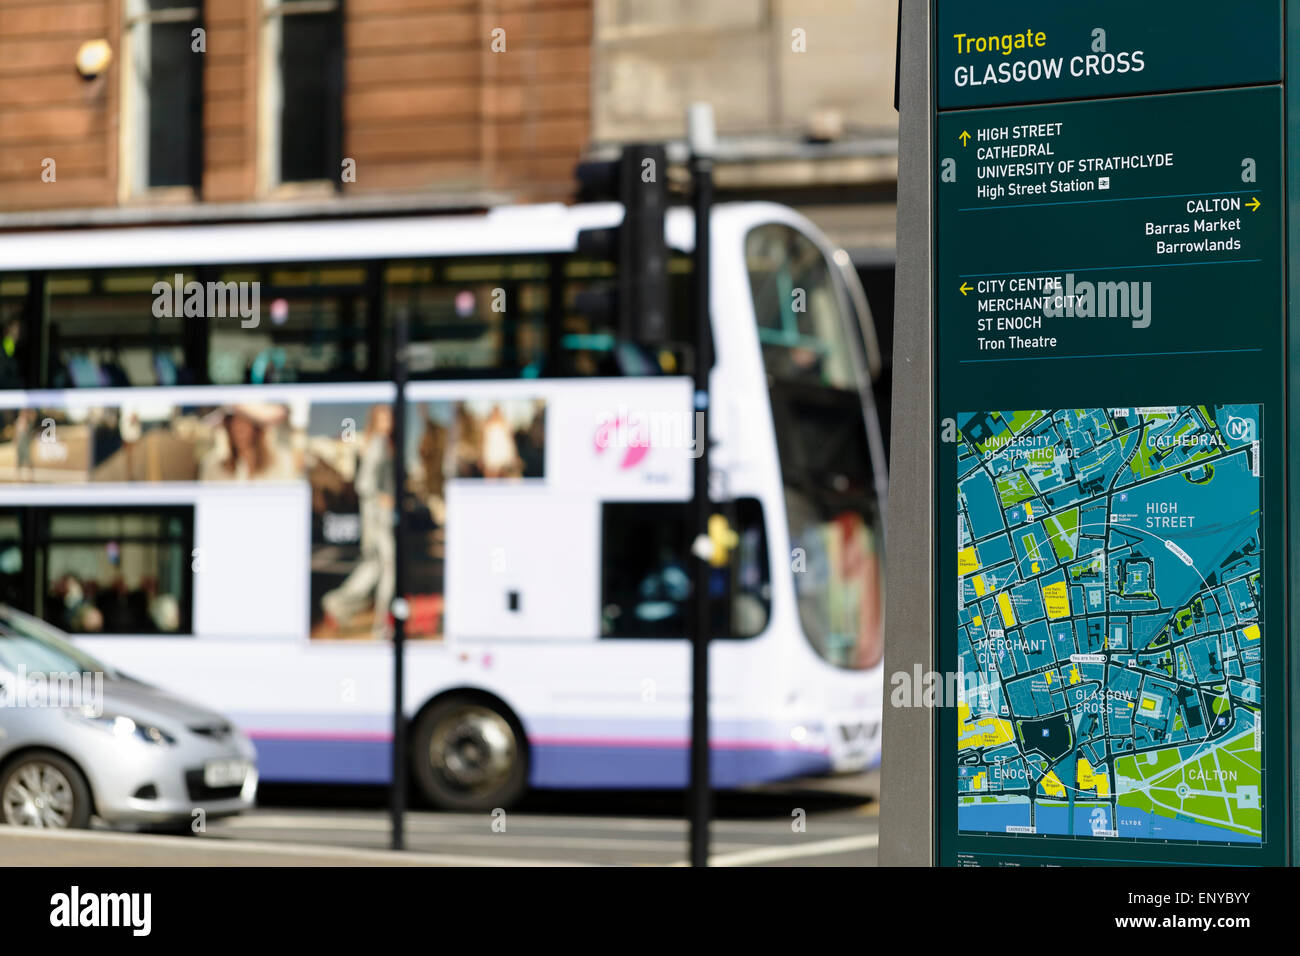 A Glasgow public Street Map on Trongate dans le centre-ville, Écosse, Royaume-Uni Banque D'Images